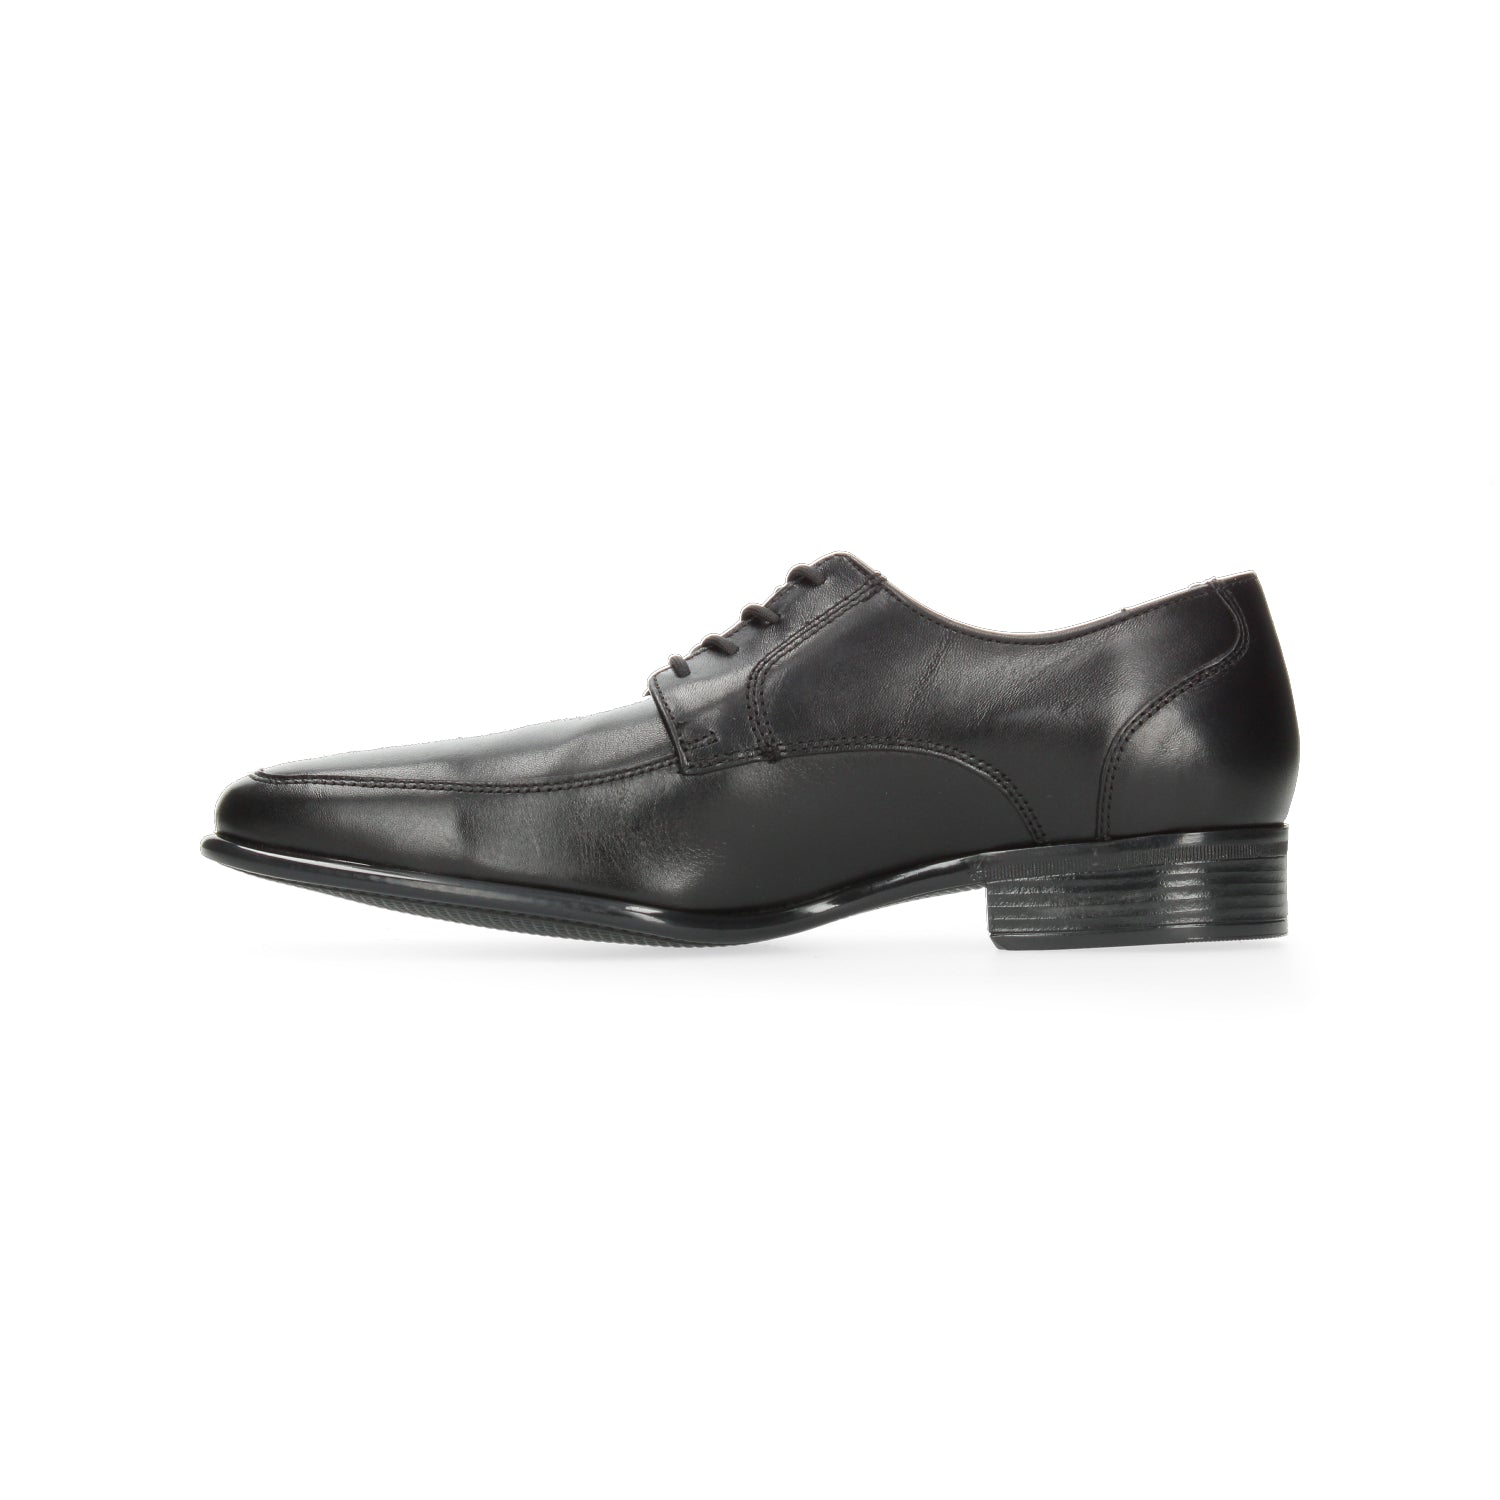 Zapato de Vestir Gino cherruti para Hombre 4416 Negro [GCH328] - Zapaterias Torreon